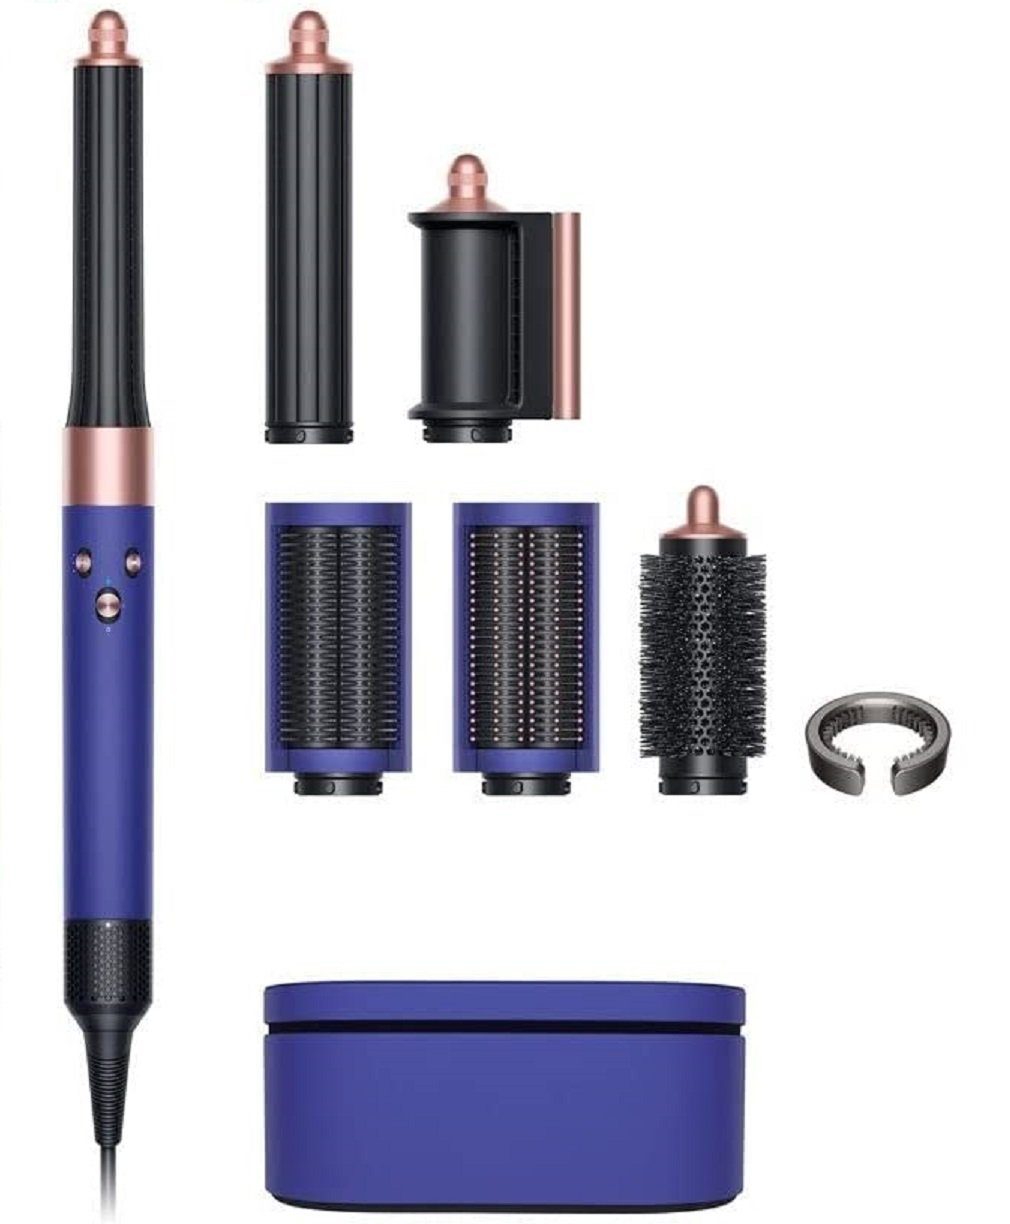 6 Multi Lockenwickler DYSON Complete Airwrap Set für Warmluft, Nachtblau/Kupfer Multihaarstyler Aufsätze, Haare, inkl Automatisch Lockenstab, Short Elektrisch kurze Haarstyler,